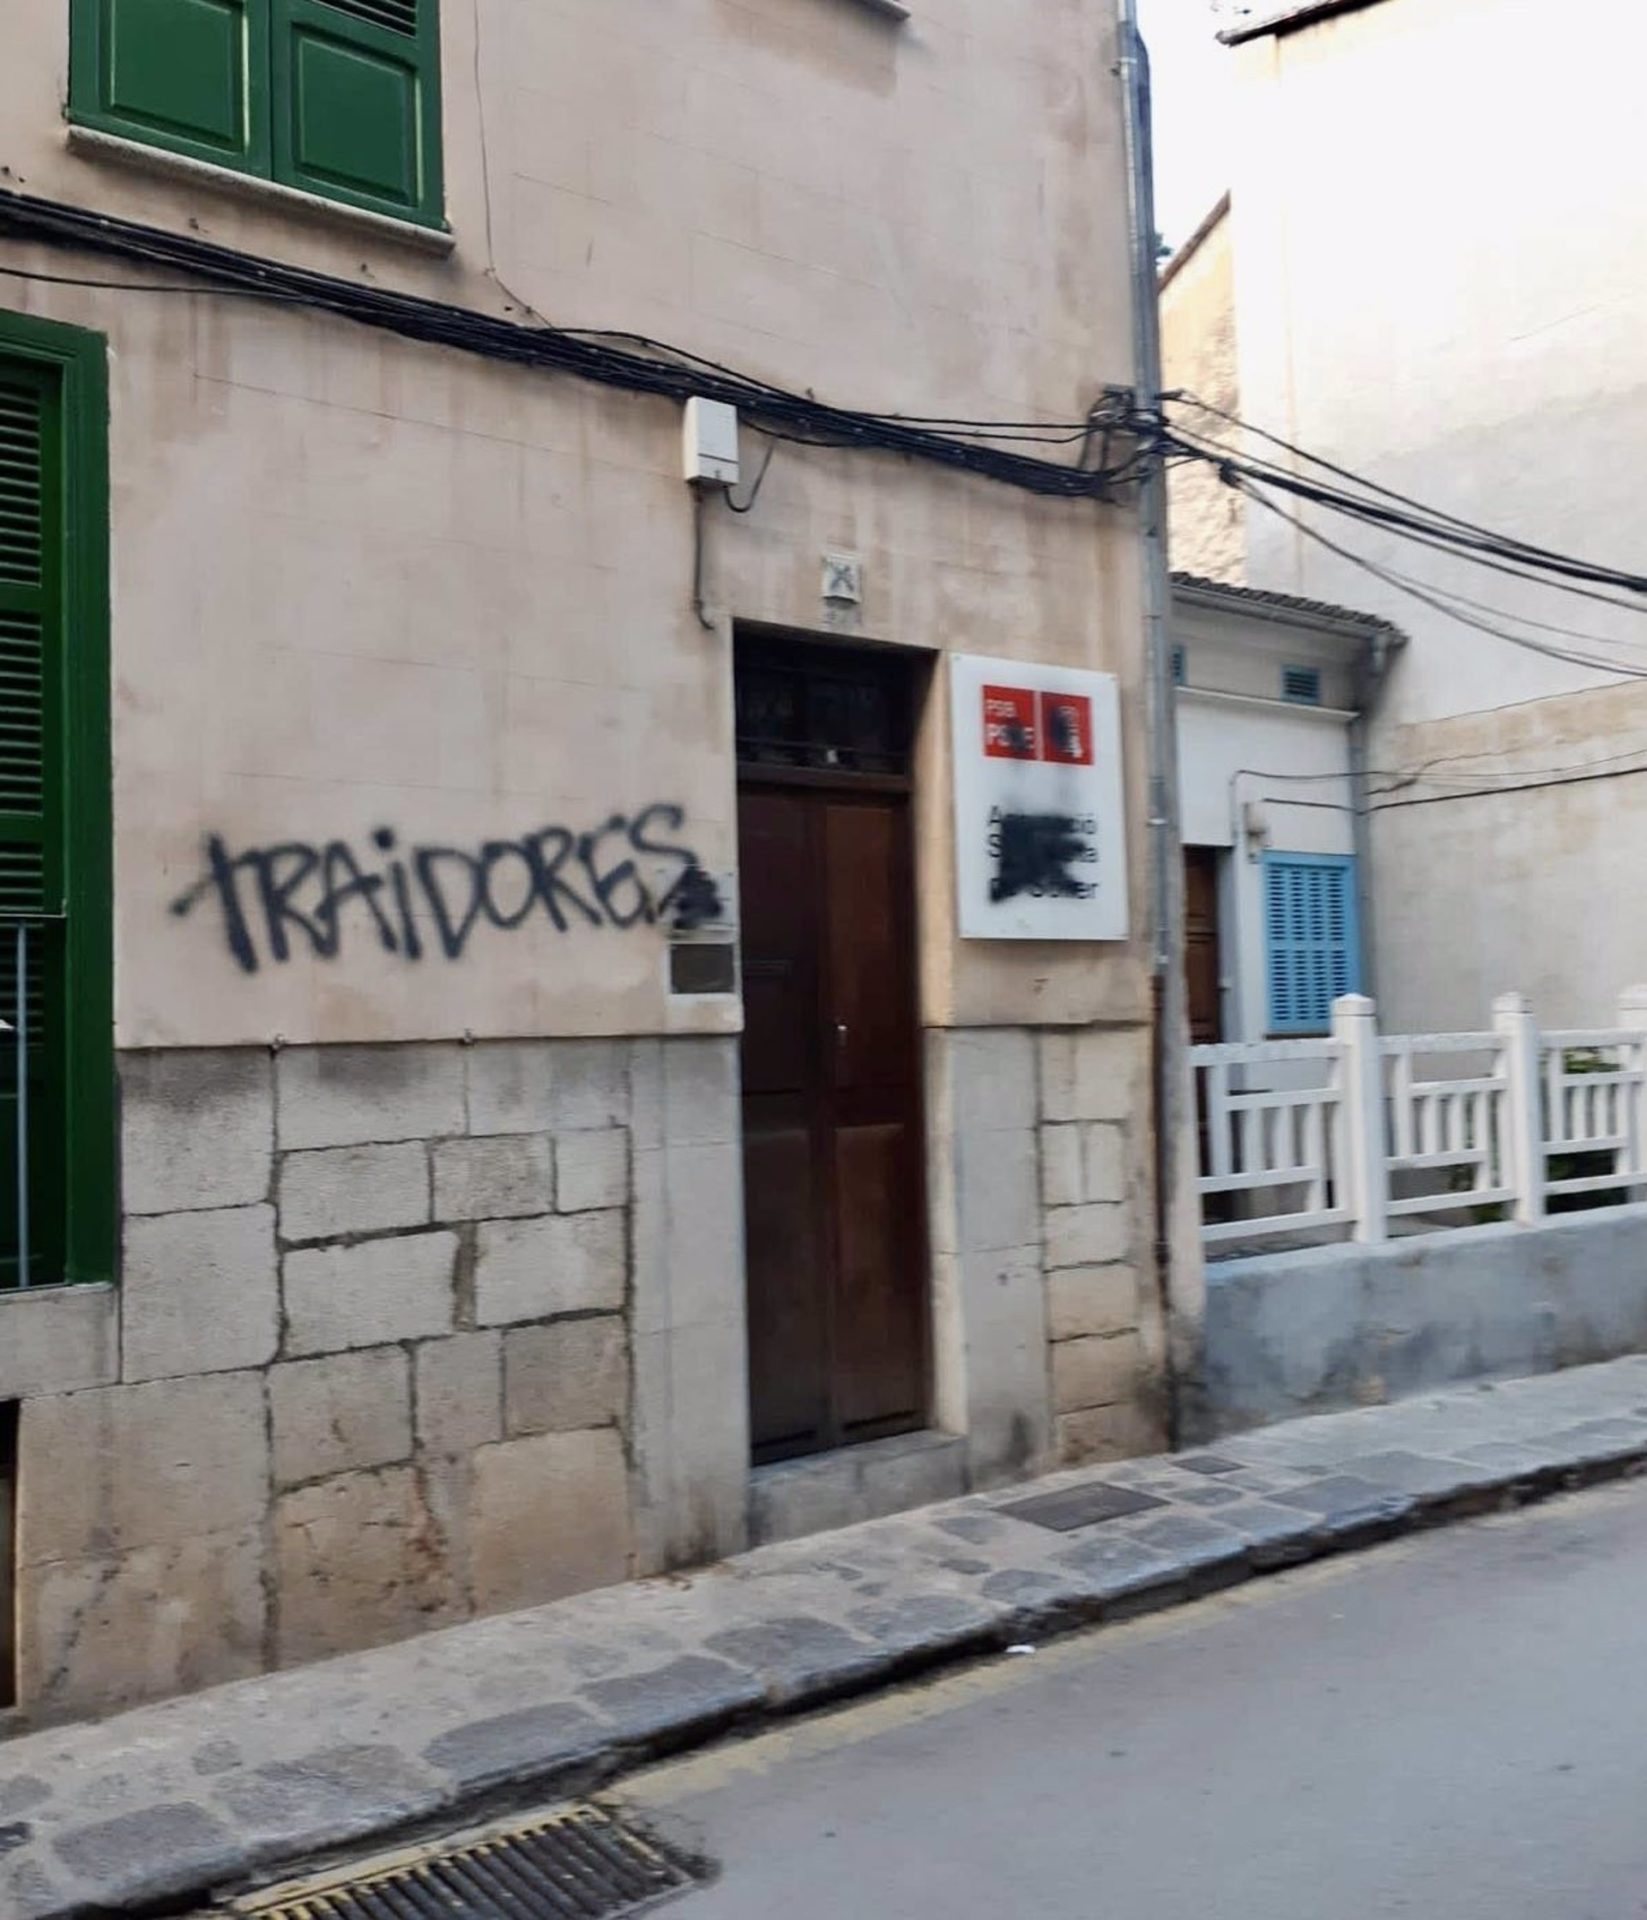 La sede de la agrupación socialista de Sóller con el mensaje "traidores" pintado. - PSIB-PSOE